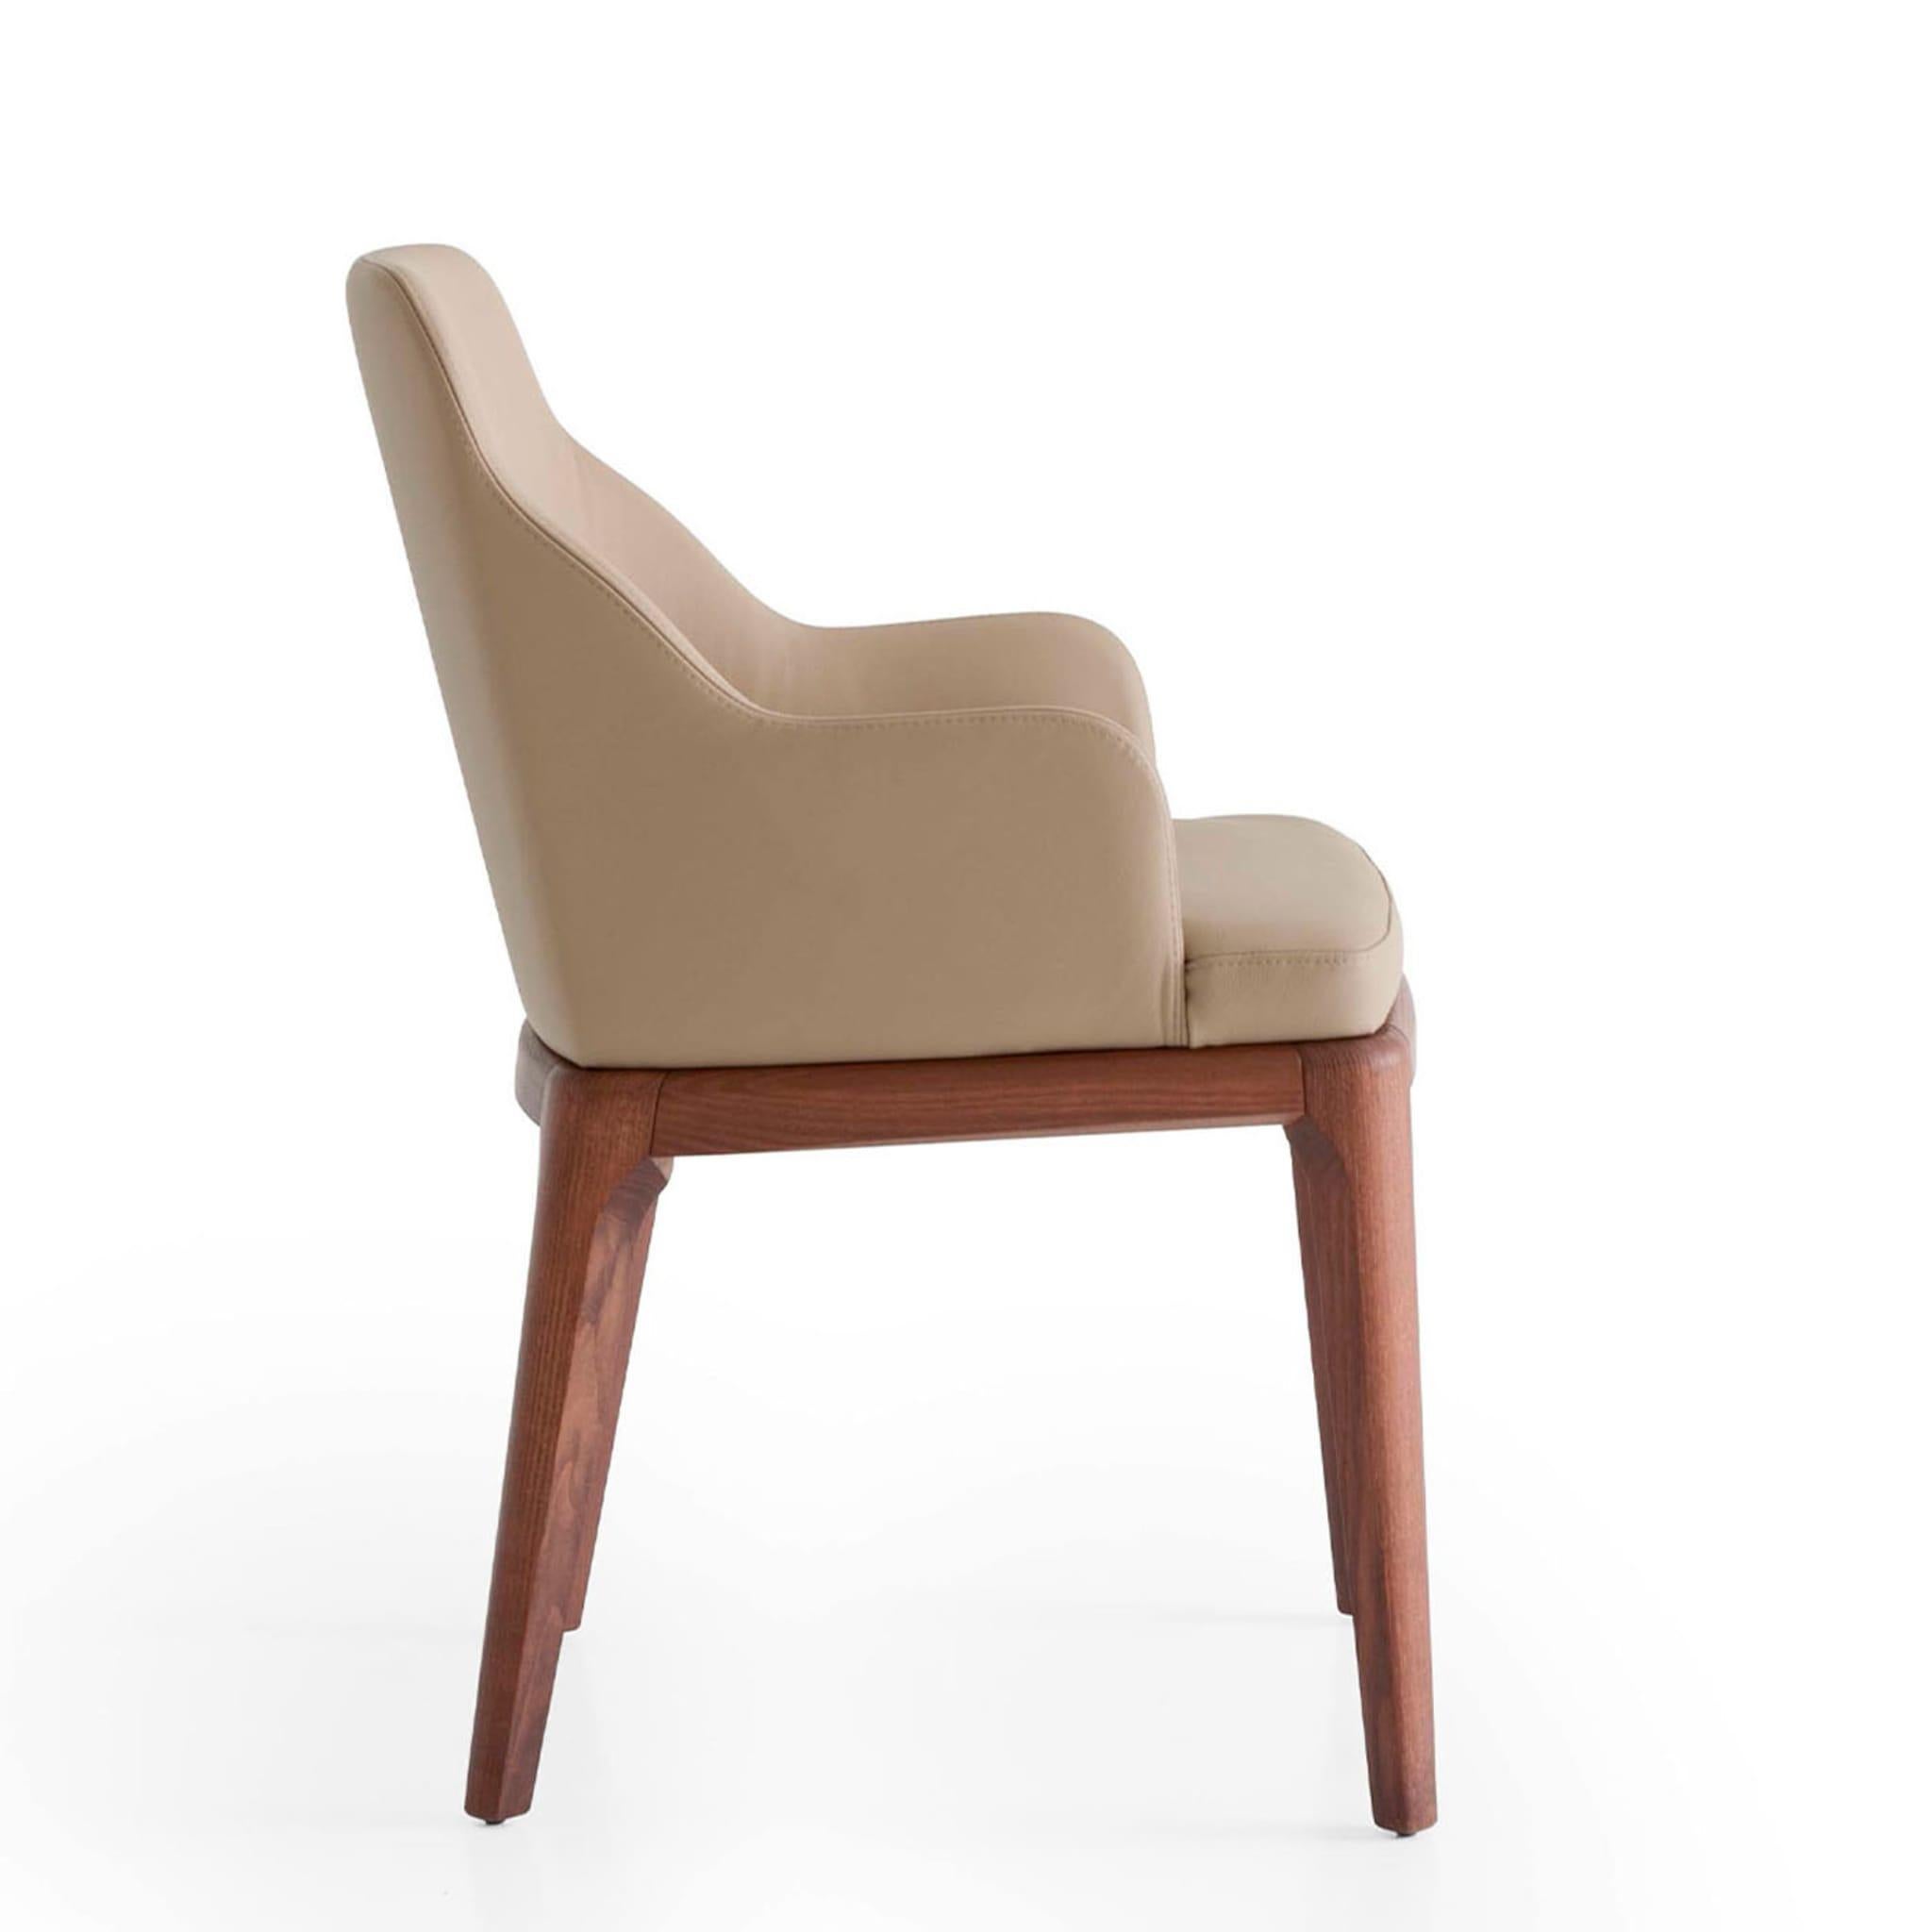 À la fois gracieux et séduisant, ce fauteuil associe avec élégance des matériaux exclusifs et des neutres chaleureux. Des pieds élégants en frêne enrichis de teinture de noyer soutiennent l'unité d'assise, dont la coque en bois enveloppante est